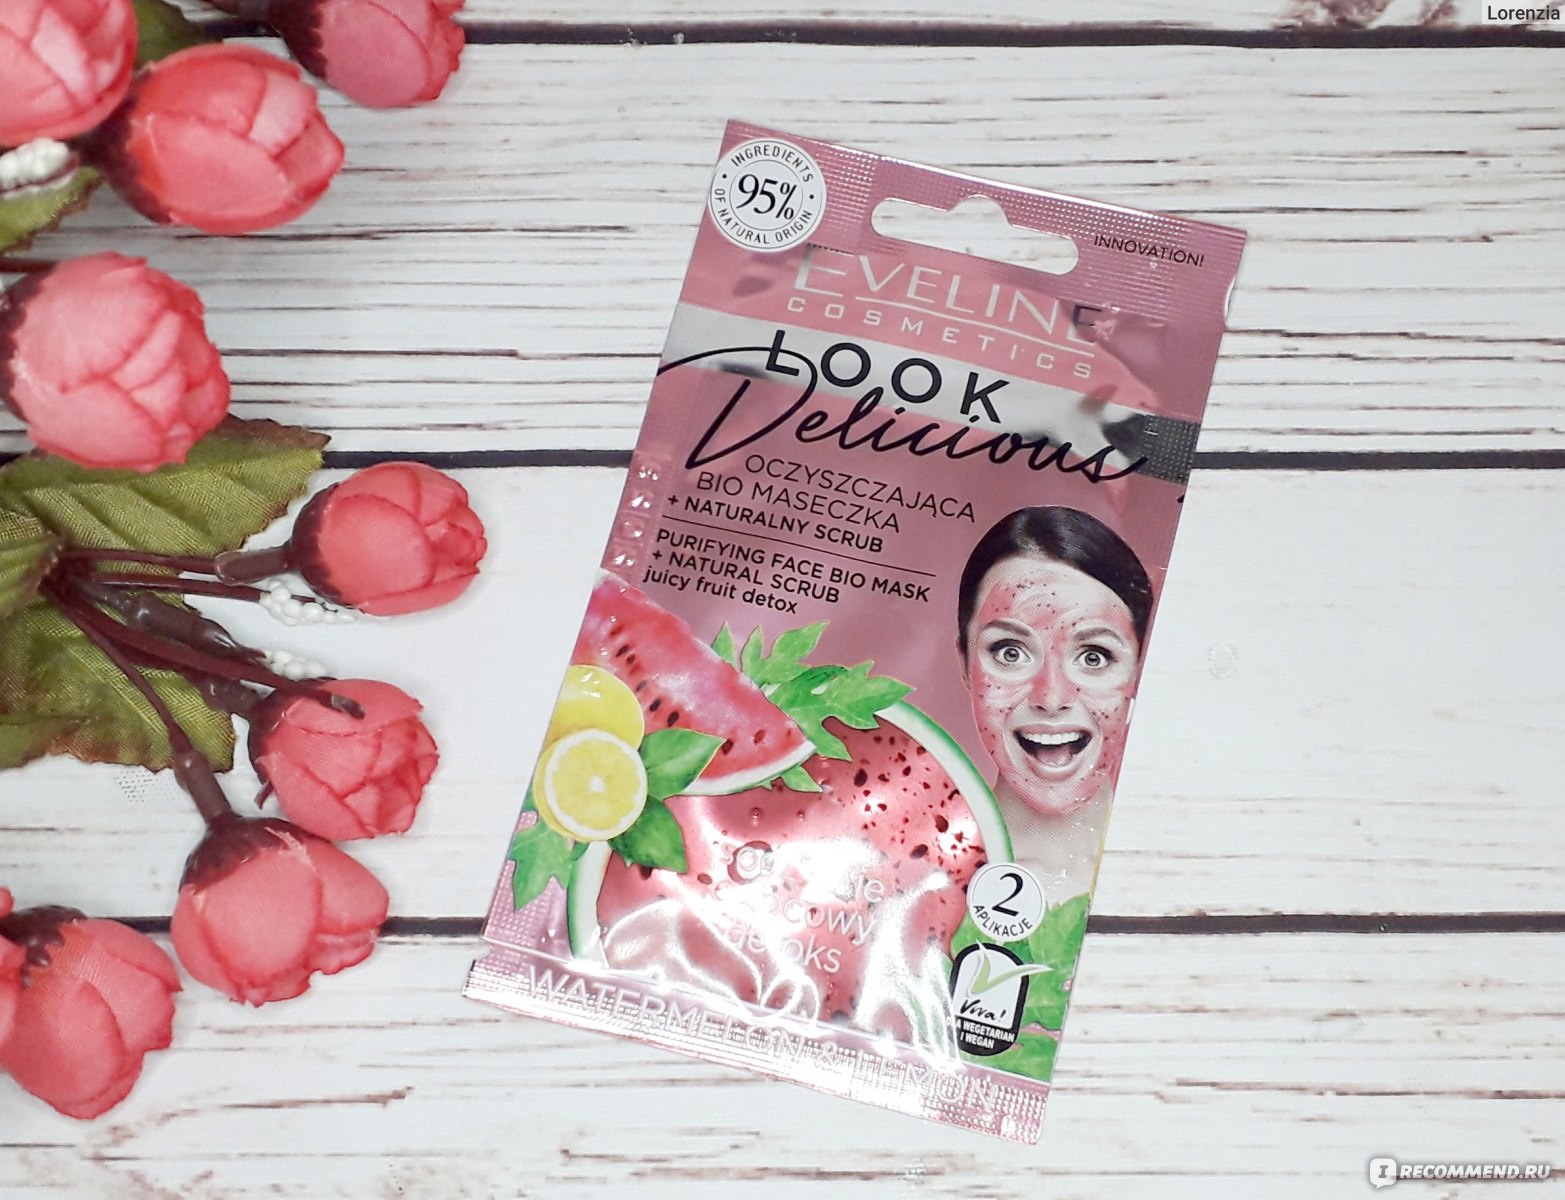 Очищающая bio маска для лица с натуральным скрабом Eveline Cosmetics Look Delicious Watermelon&Lemon фото